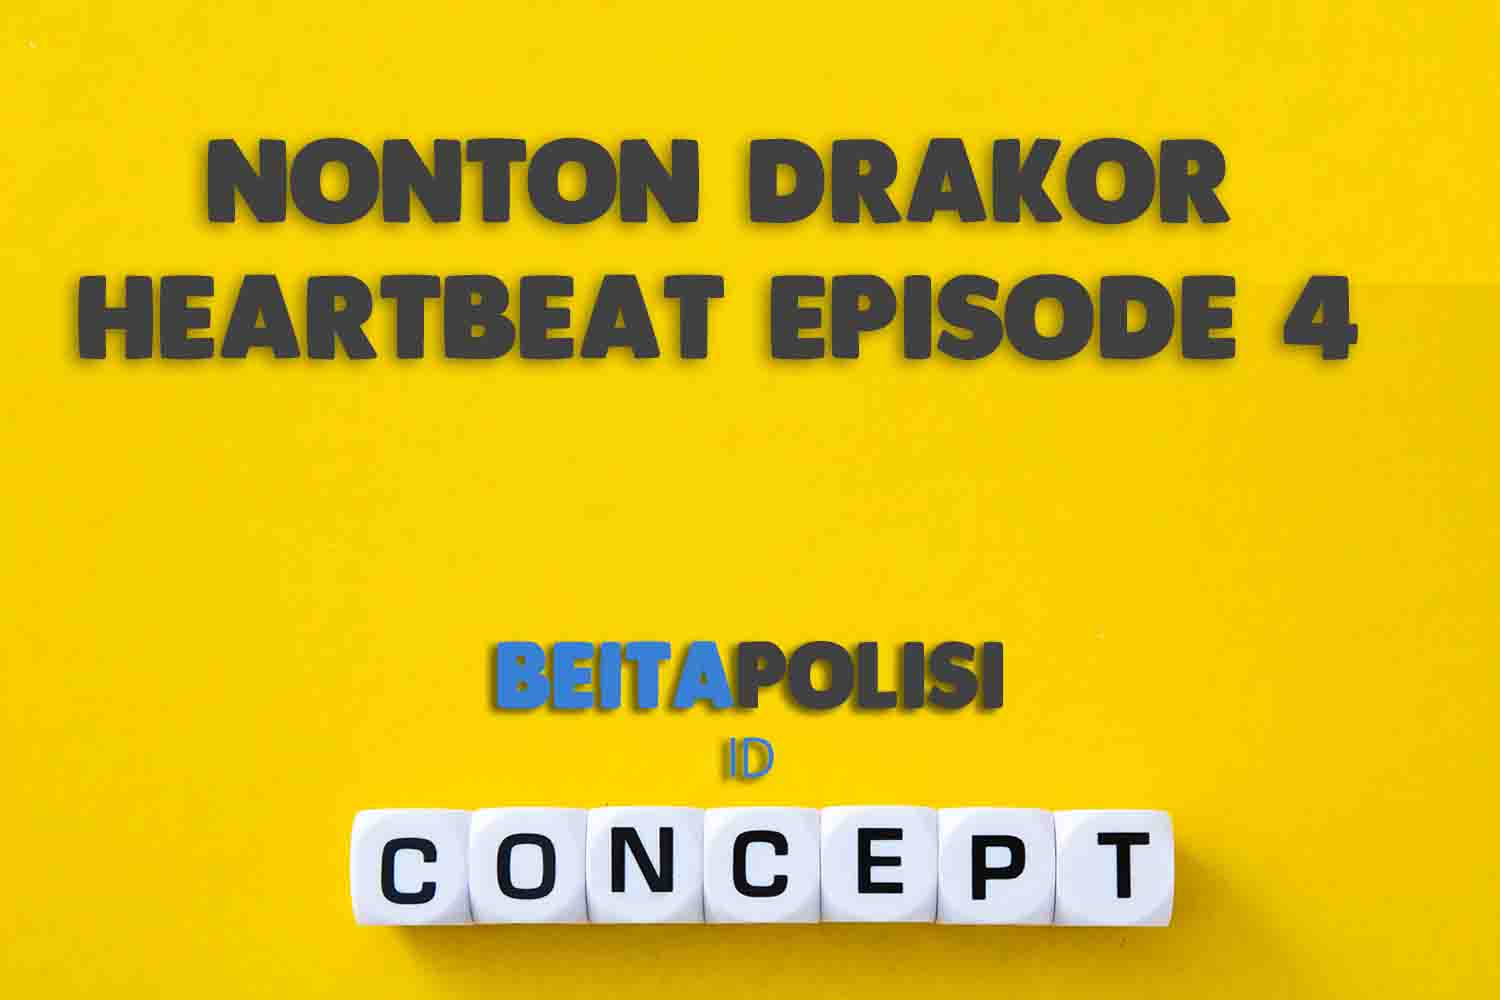 Nonton Drakor Heartbeat Episode 4 Sub Indo Di Platform Online Ada Di Sini Klik Link Ini Agar Mudah